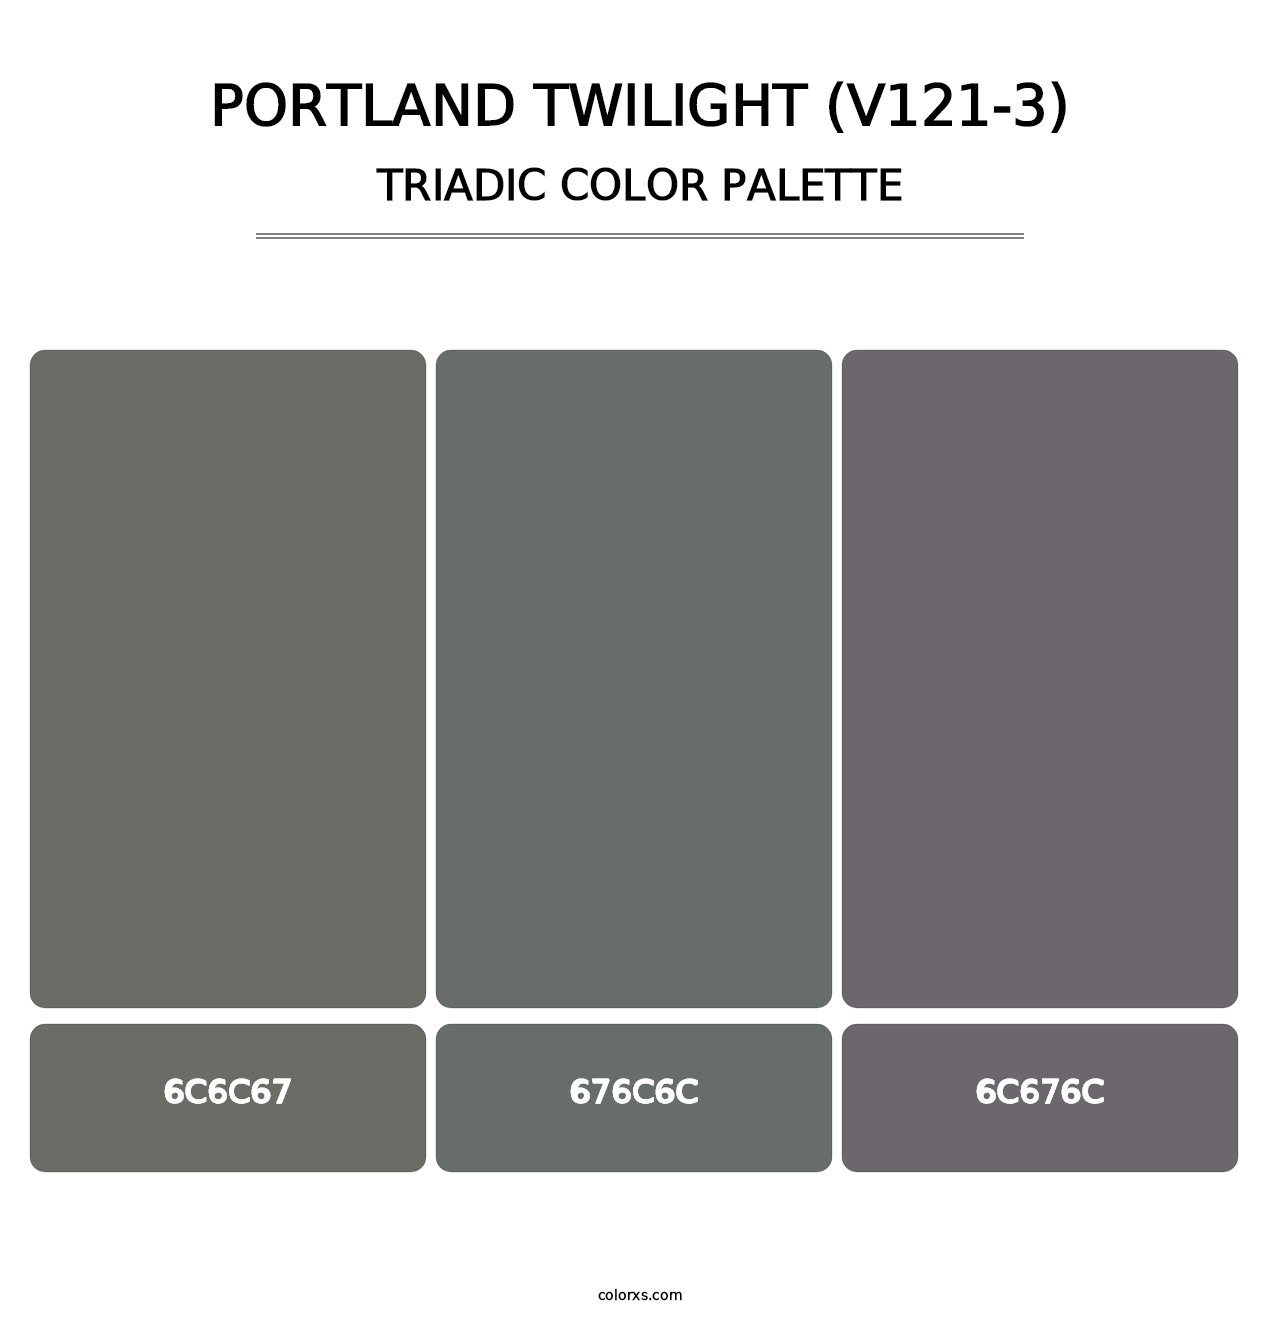 Portland Twilight (V121-3) - Triadic Color Palette